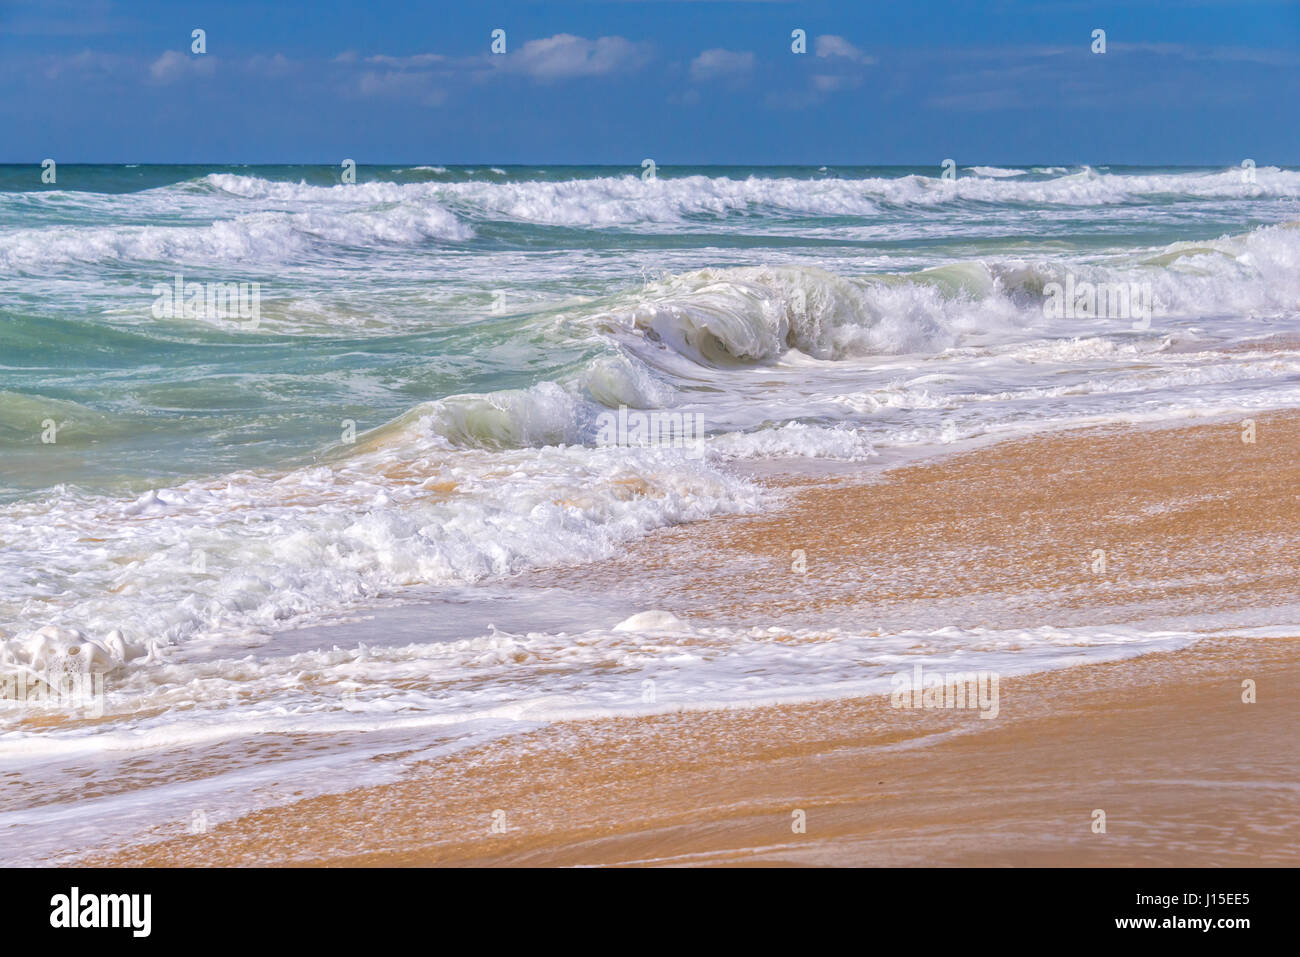 Les vagues sur la plage, l'océan Atlantique à Lacanau, France Banque D'Images